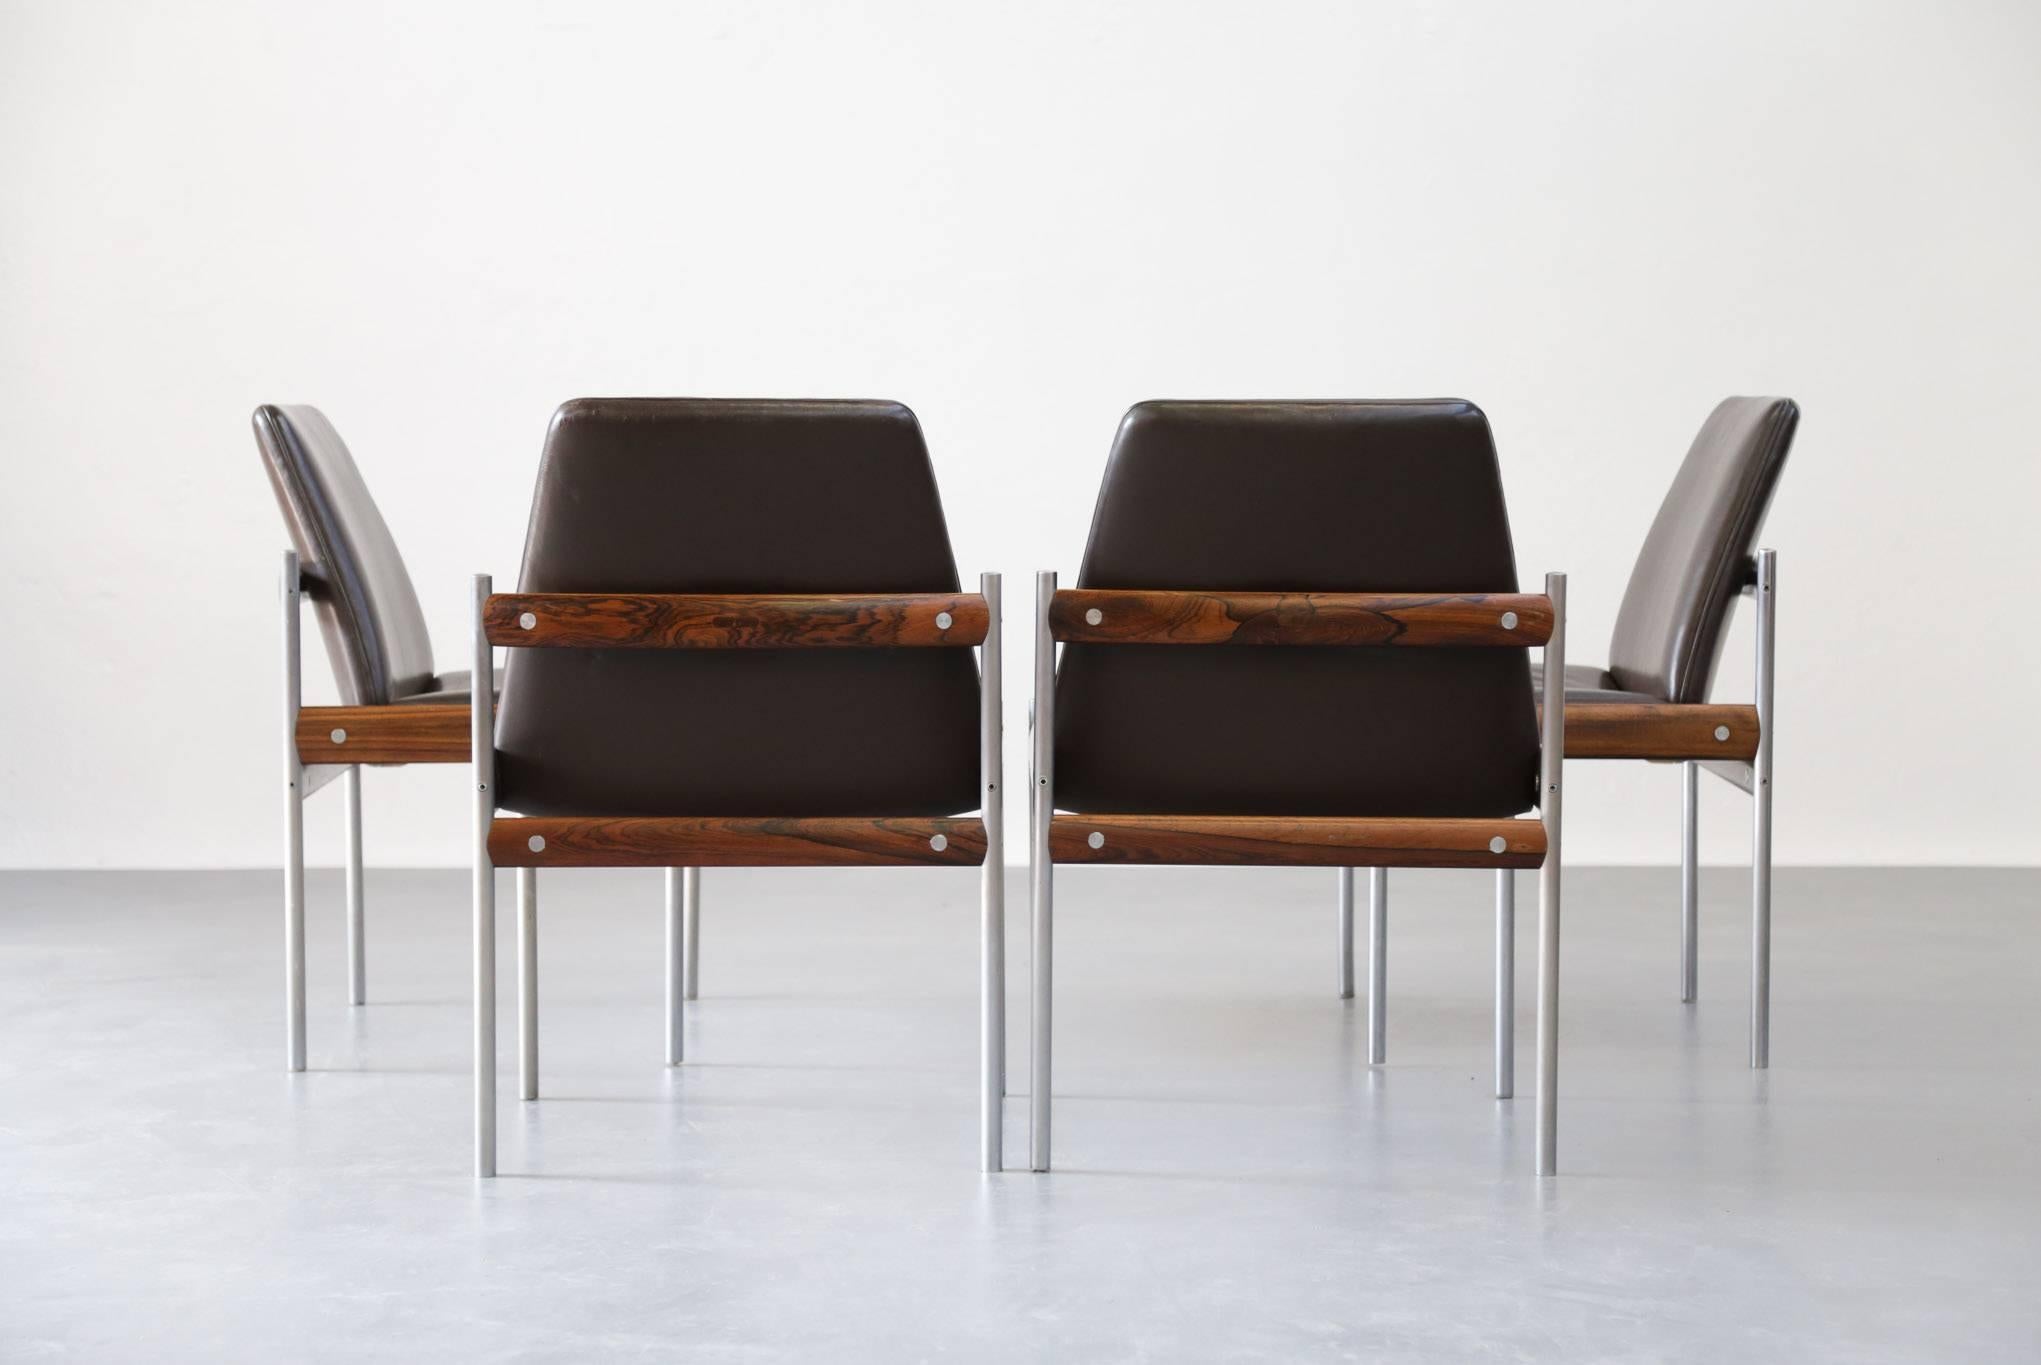 Scandinavian Modern Rare Set of Four Scandinavian Chairs by Sven Ivar Dysthe, Danish